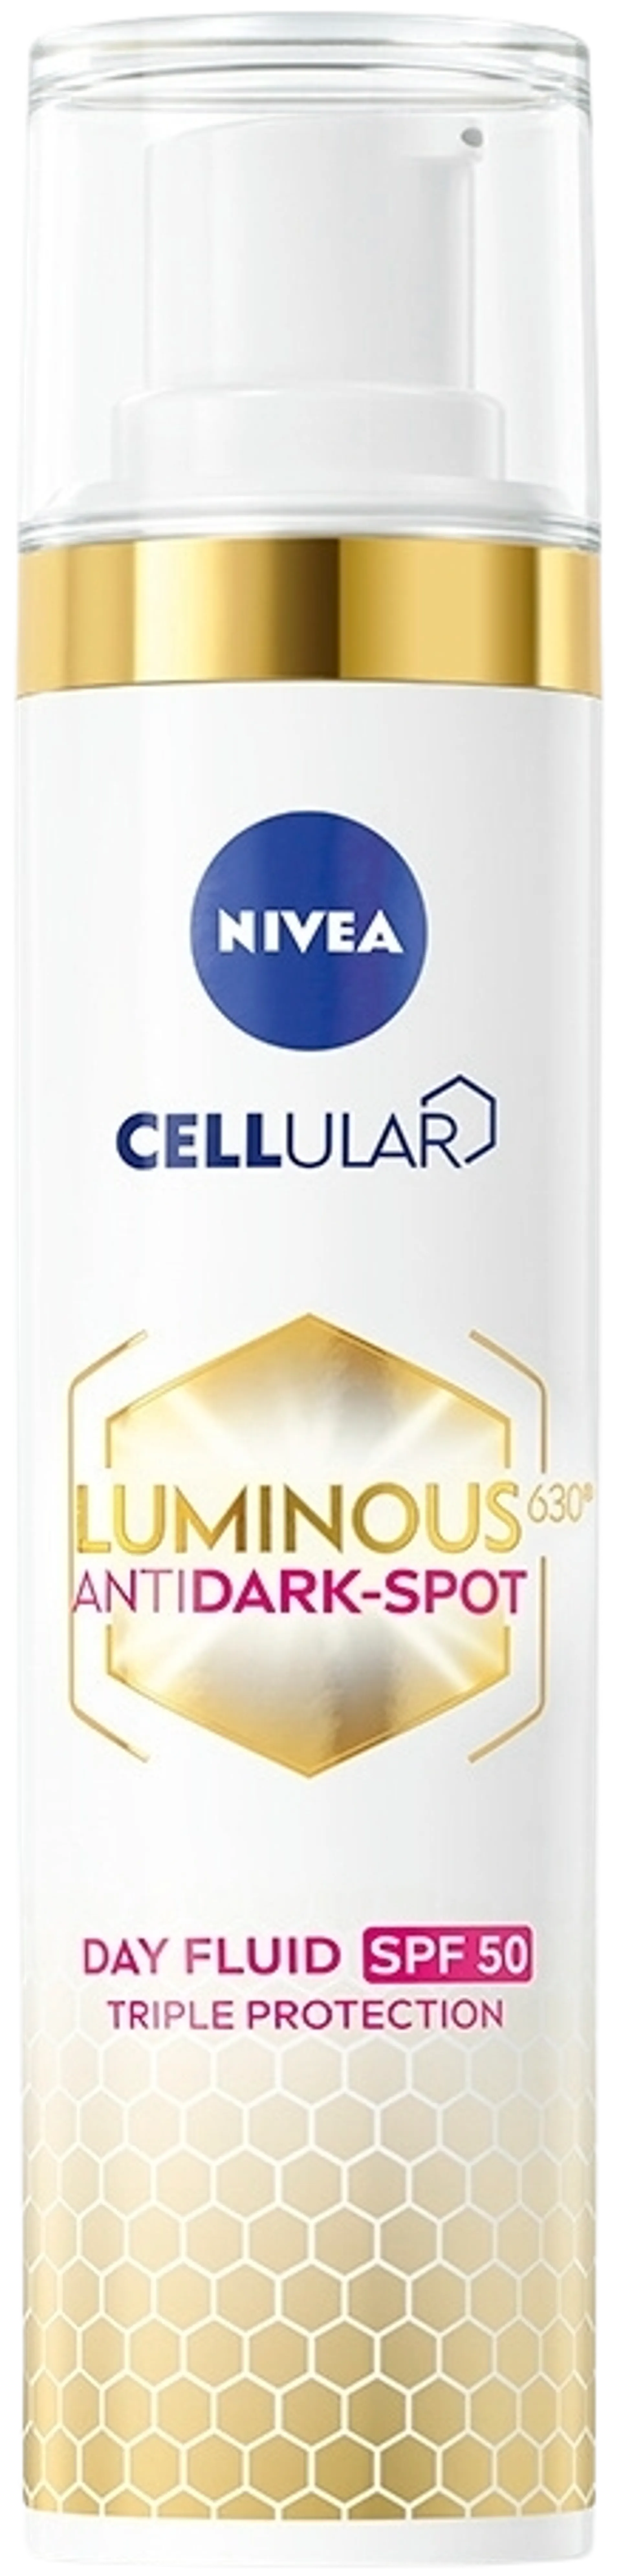 NIVEA 40ml Cellular Luminous630 Anti Dark-Spot Day Fluid sk 50 -päivävoide - 2